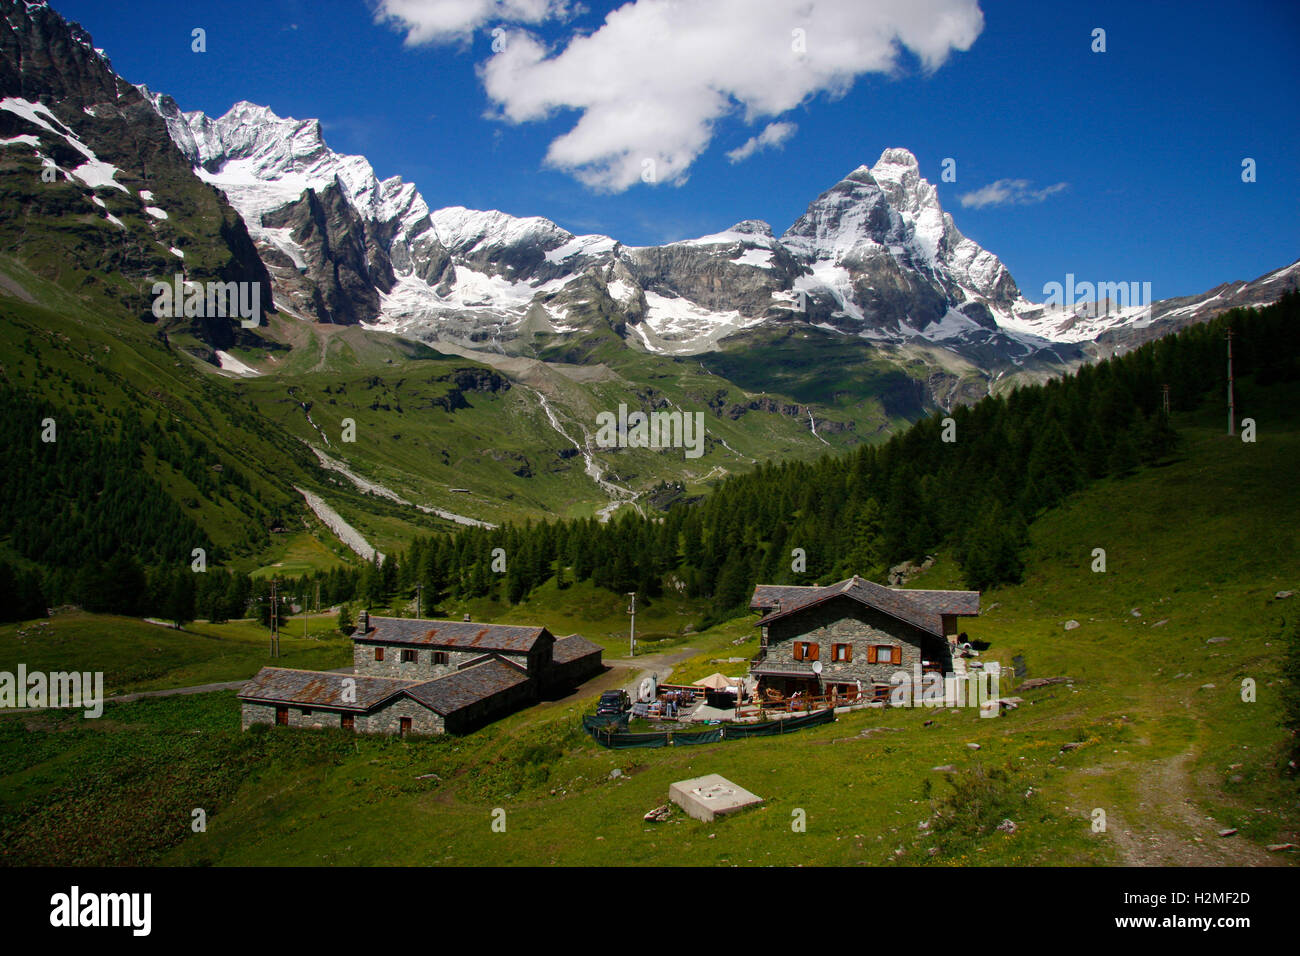 das Matterhorn von der italienischen Seite, von Valtournenche aus geshene. Hier heisst der Berg Monte Cervino, Italien. Stock Photo